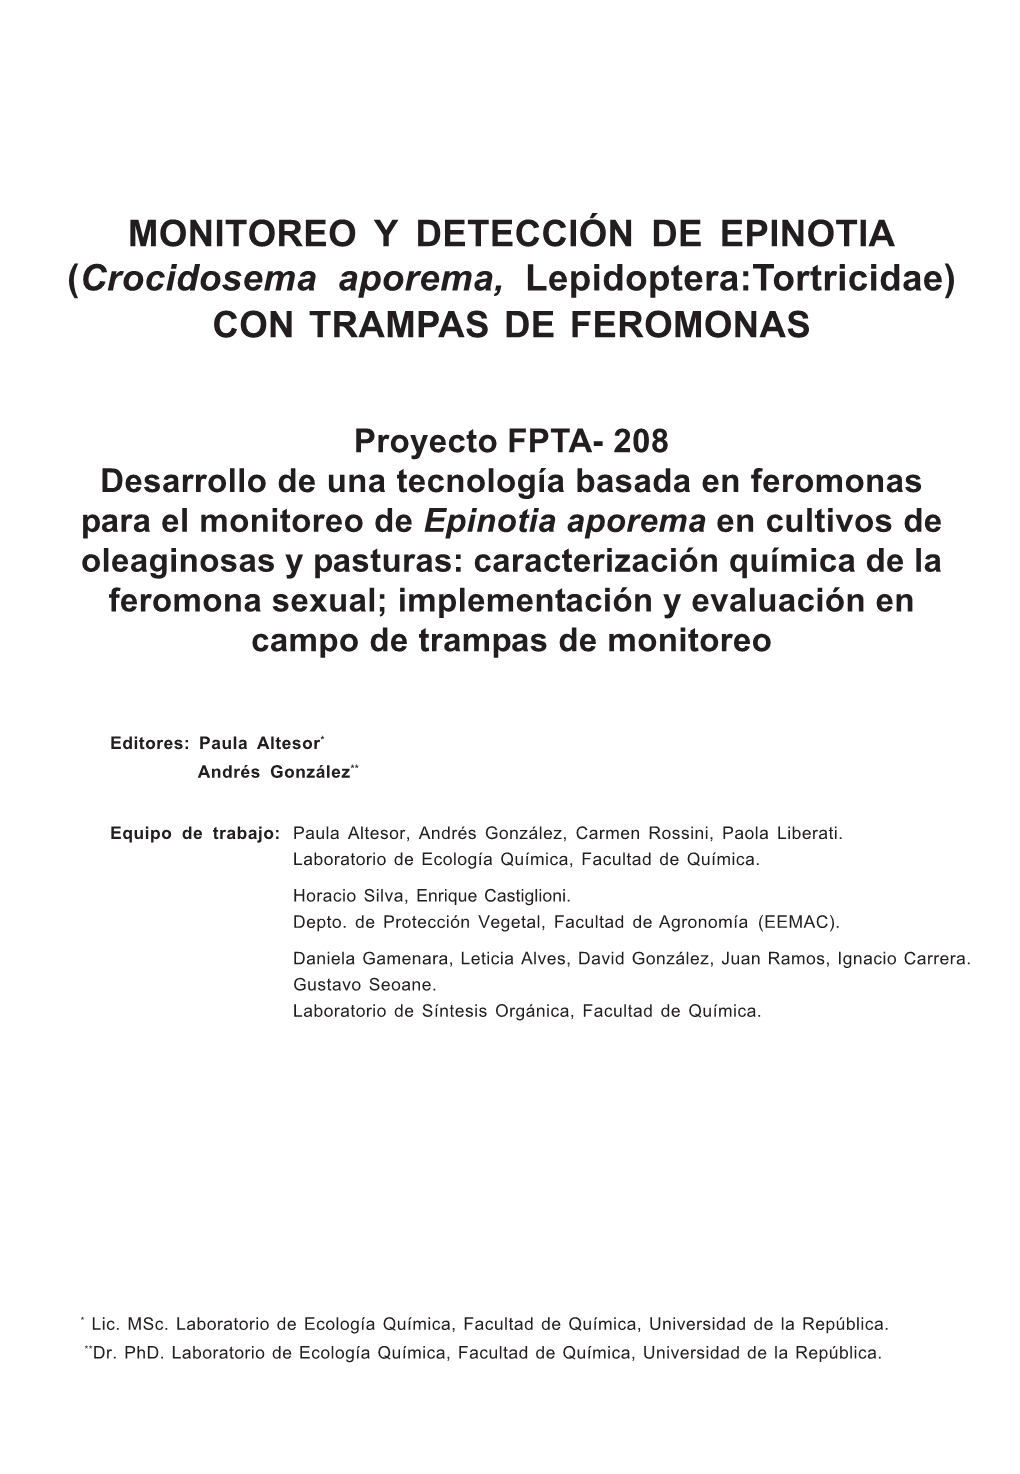 MONITOREO Y DETECCIÓN DE EPINOTIA (Crocidosema Aporema, Lepidoptera:Tortricidae) CON TRAMPAS DE FEROMONAS